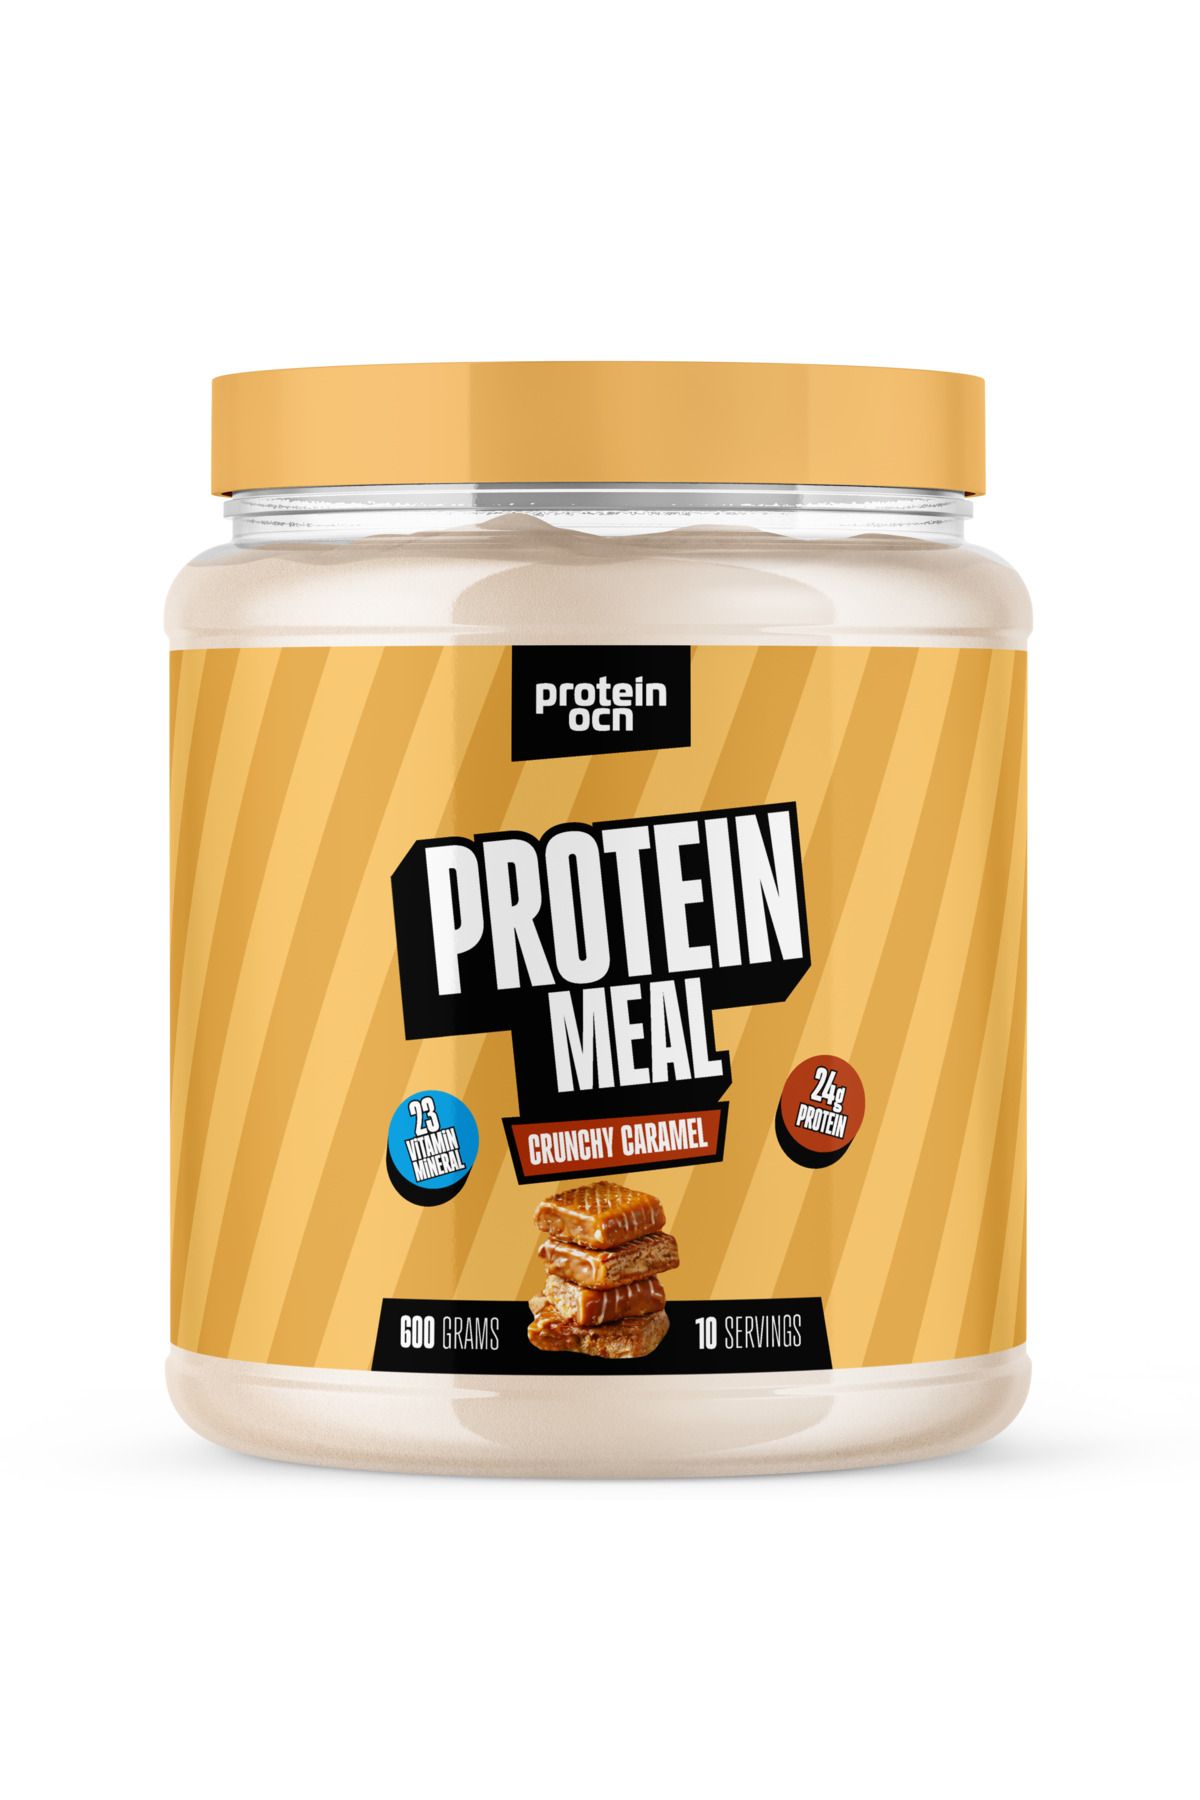 Proteinocean Protein Meal | Proteinli Öğün Tozu - Crunchy Caramel - 600g - 10 Servis